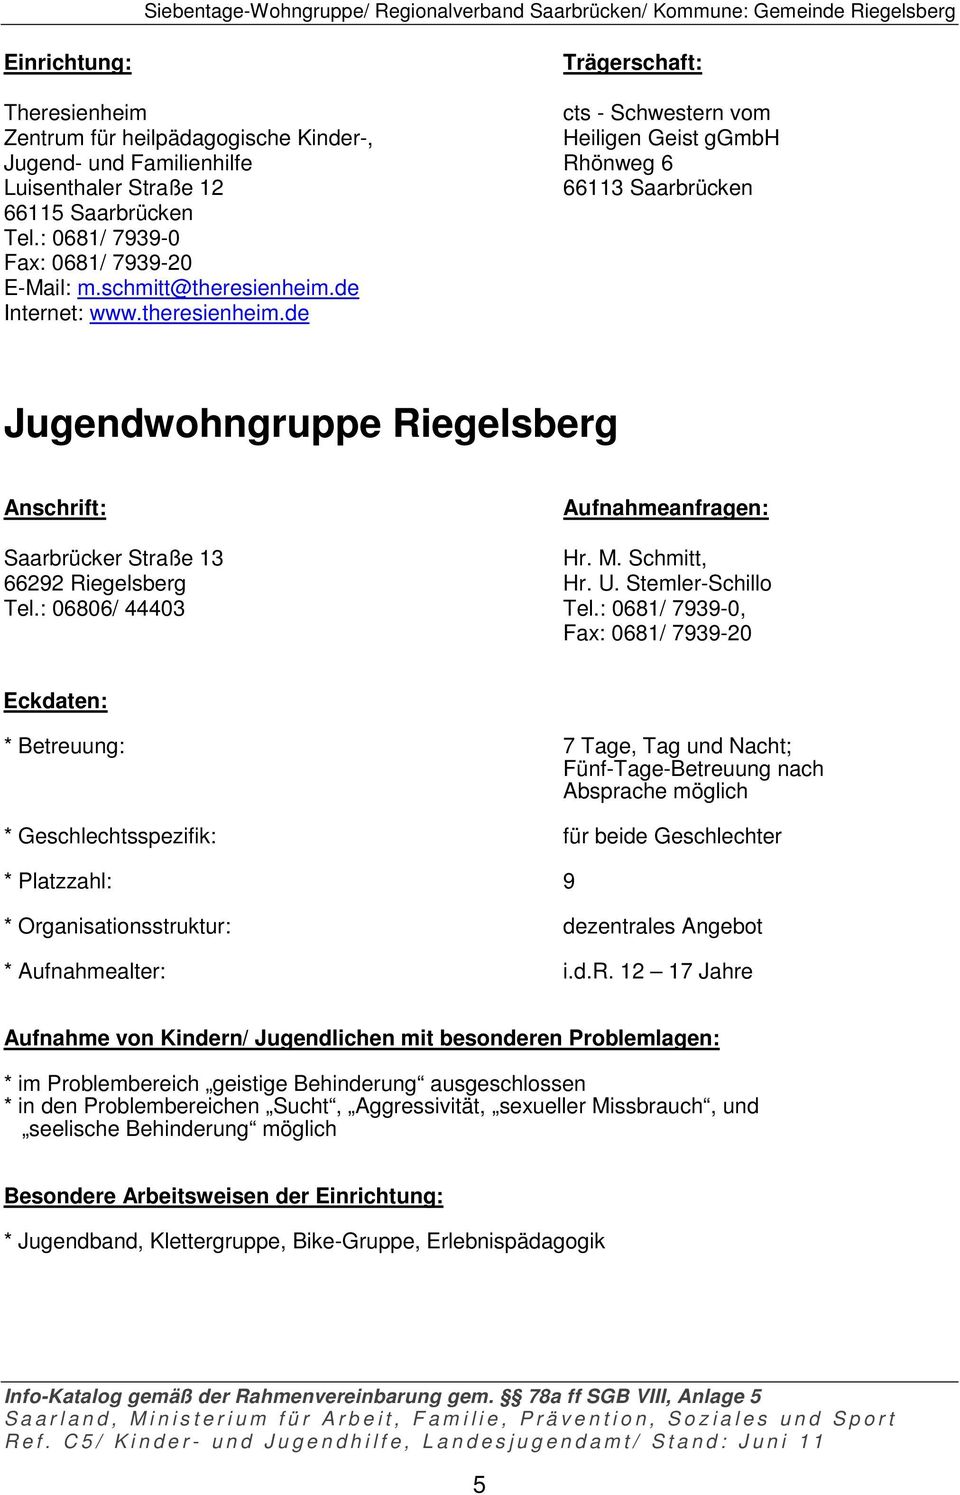 de Internet: www.theresienheim.de Jugendwohngruppe Riegelsberg Saarbrücker Straße 13 Hr. M. Schmitt, 66292 Riegelsberg Hr. U. Stemler-Schillo Tel.: 06806/ 44403 Tel.